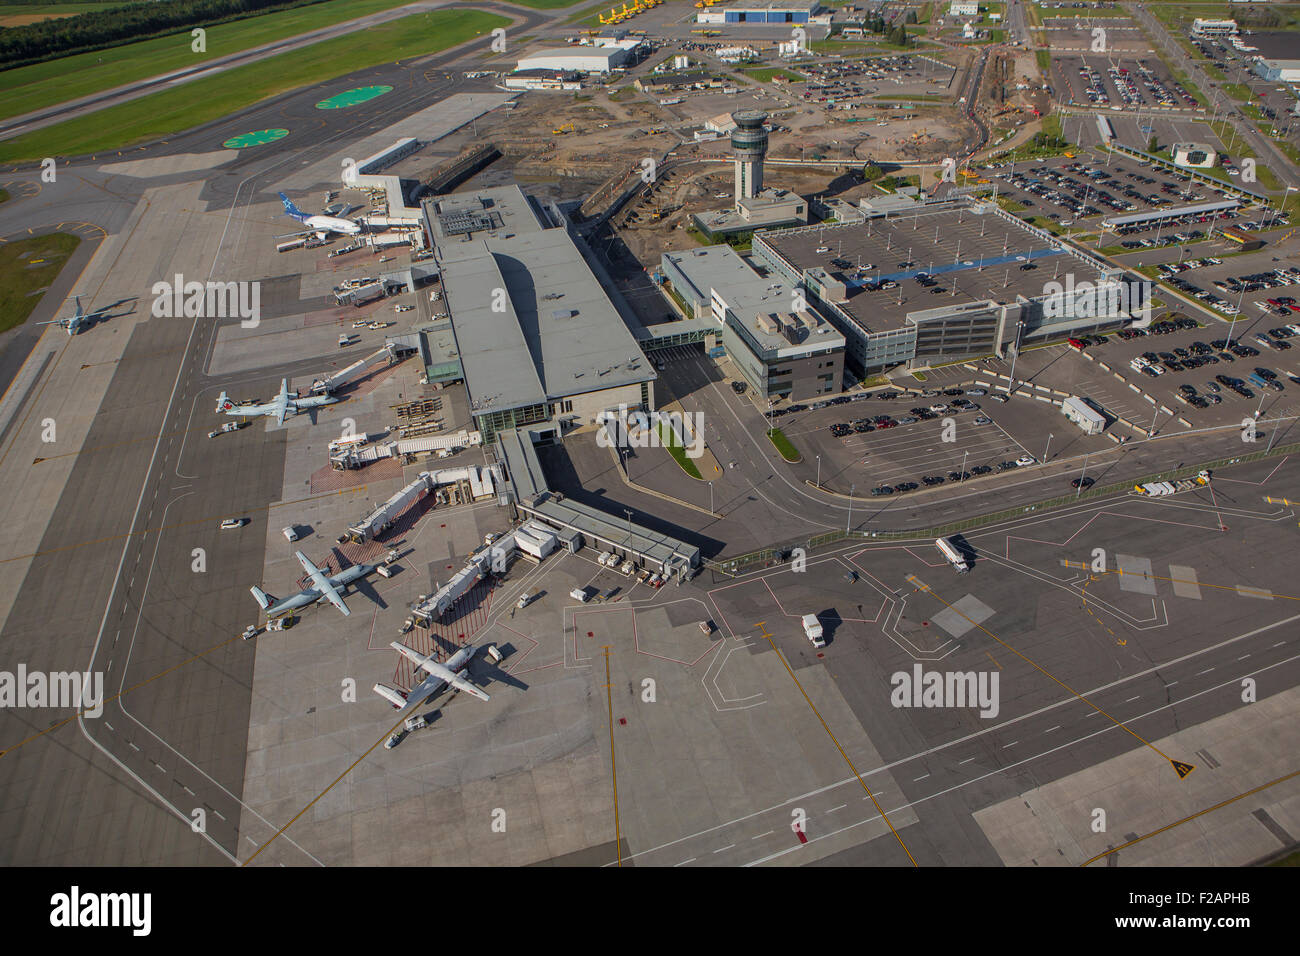 La ville de Québec l'Aéroport International Jean Lesage est représentée  dans cette vue aérienne de la ville de Québec Photo Stock - Alamy